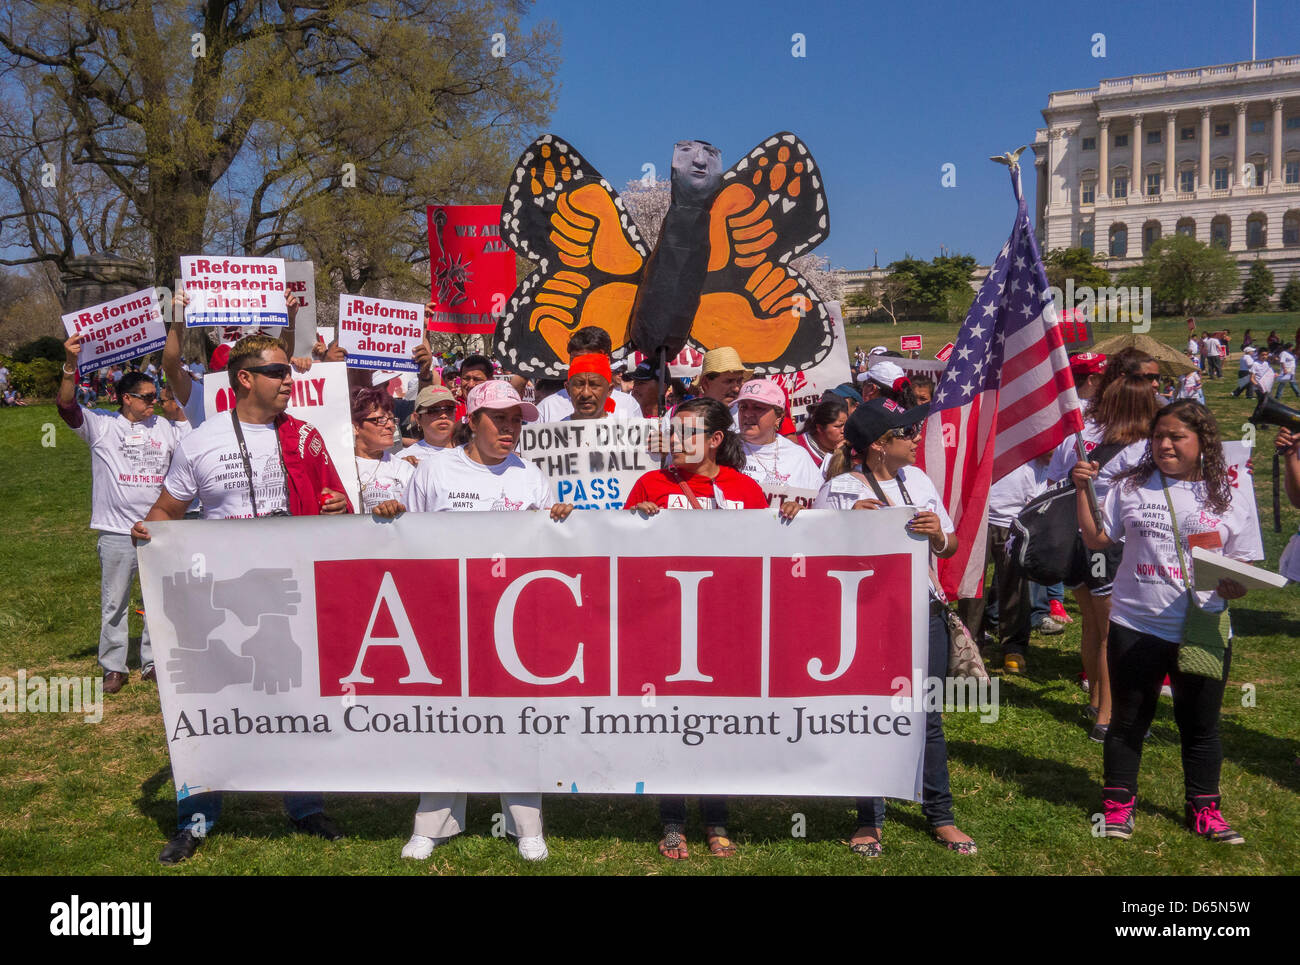 Washington DC, USA. 10. April 2013. Während Immigration Reform Kundgebung am Kapitol halten Demonstranten aus ACIJ Zeichen. Bildnachweis: Rob Crandall / Alamy Live News Stockfoto